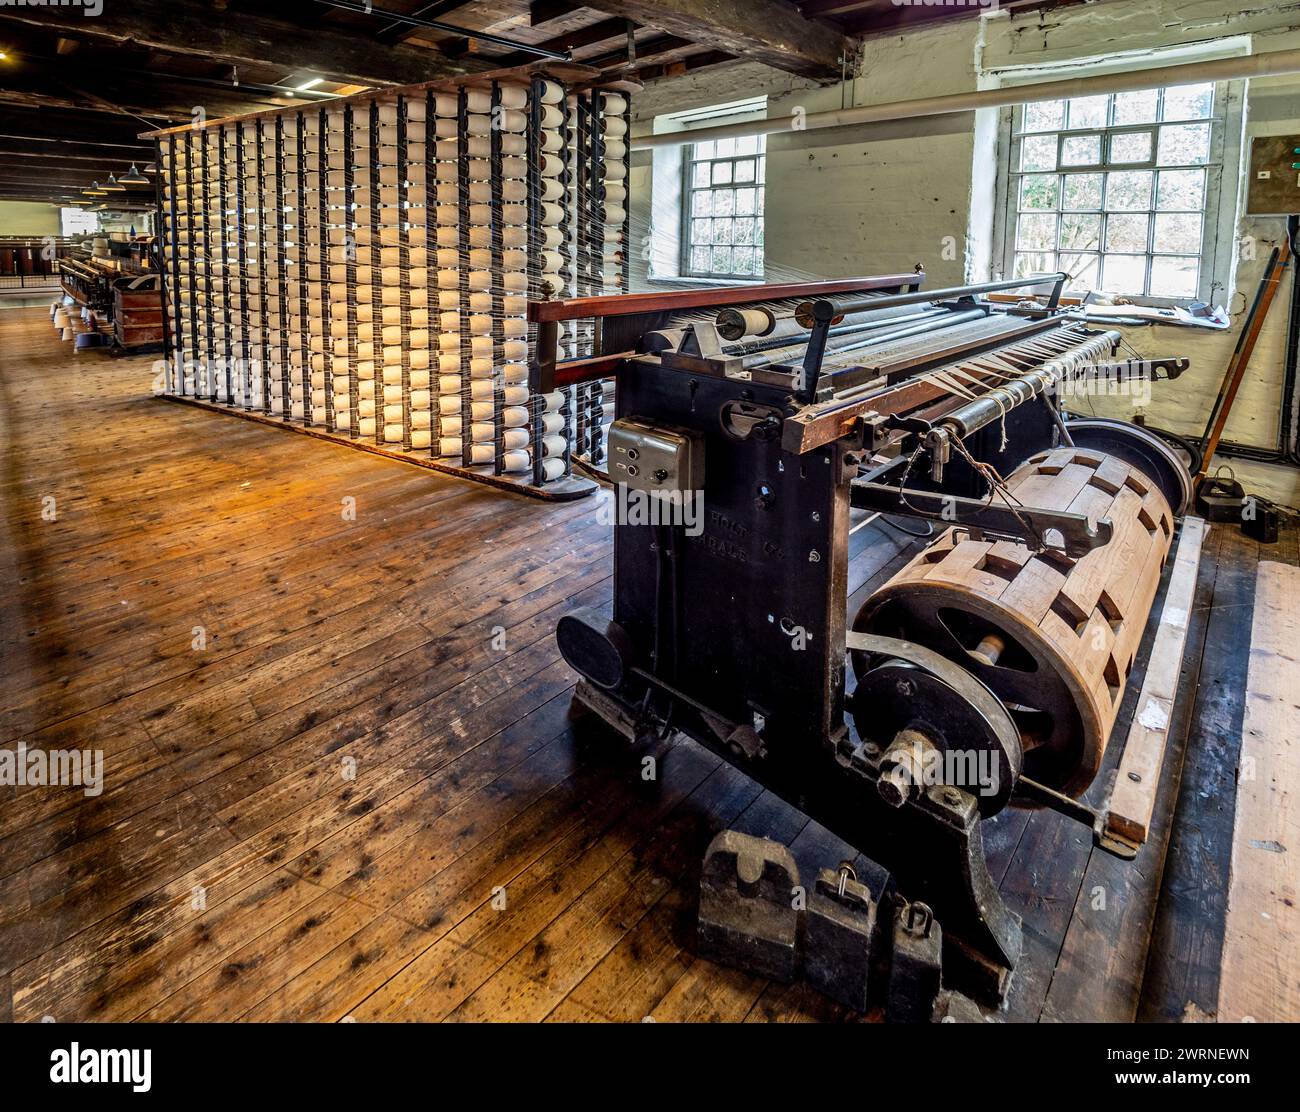 Wölbmaschine, die beim Weben von Baumwolle verwendet wird, mit Spulengestell dahinter. Quarry Bank Mill, Styal, Cheshire, Großbritannien Stockfoto